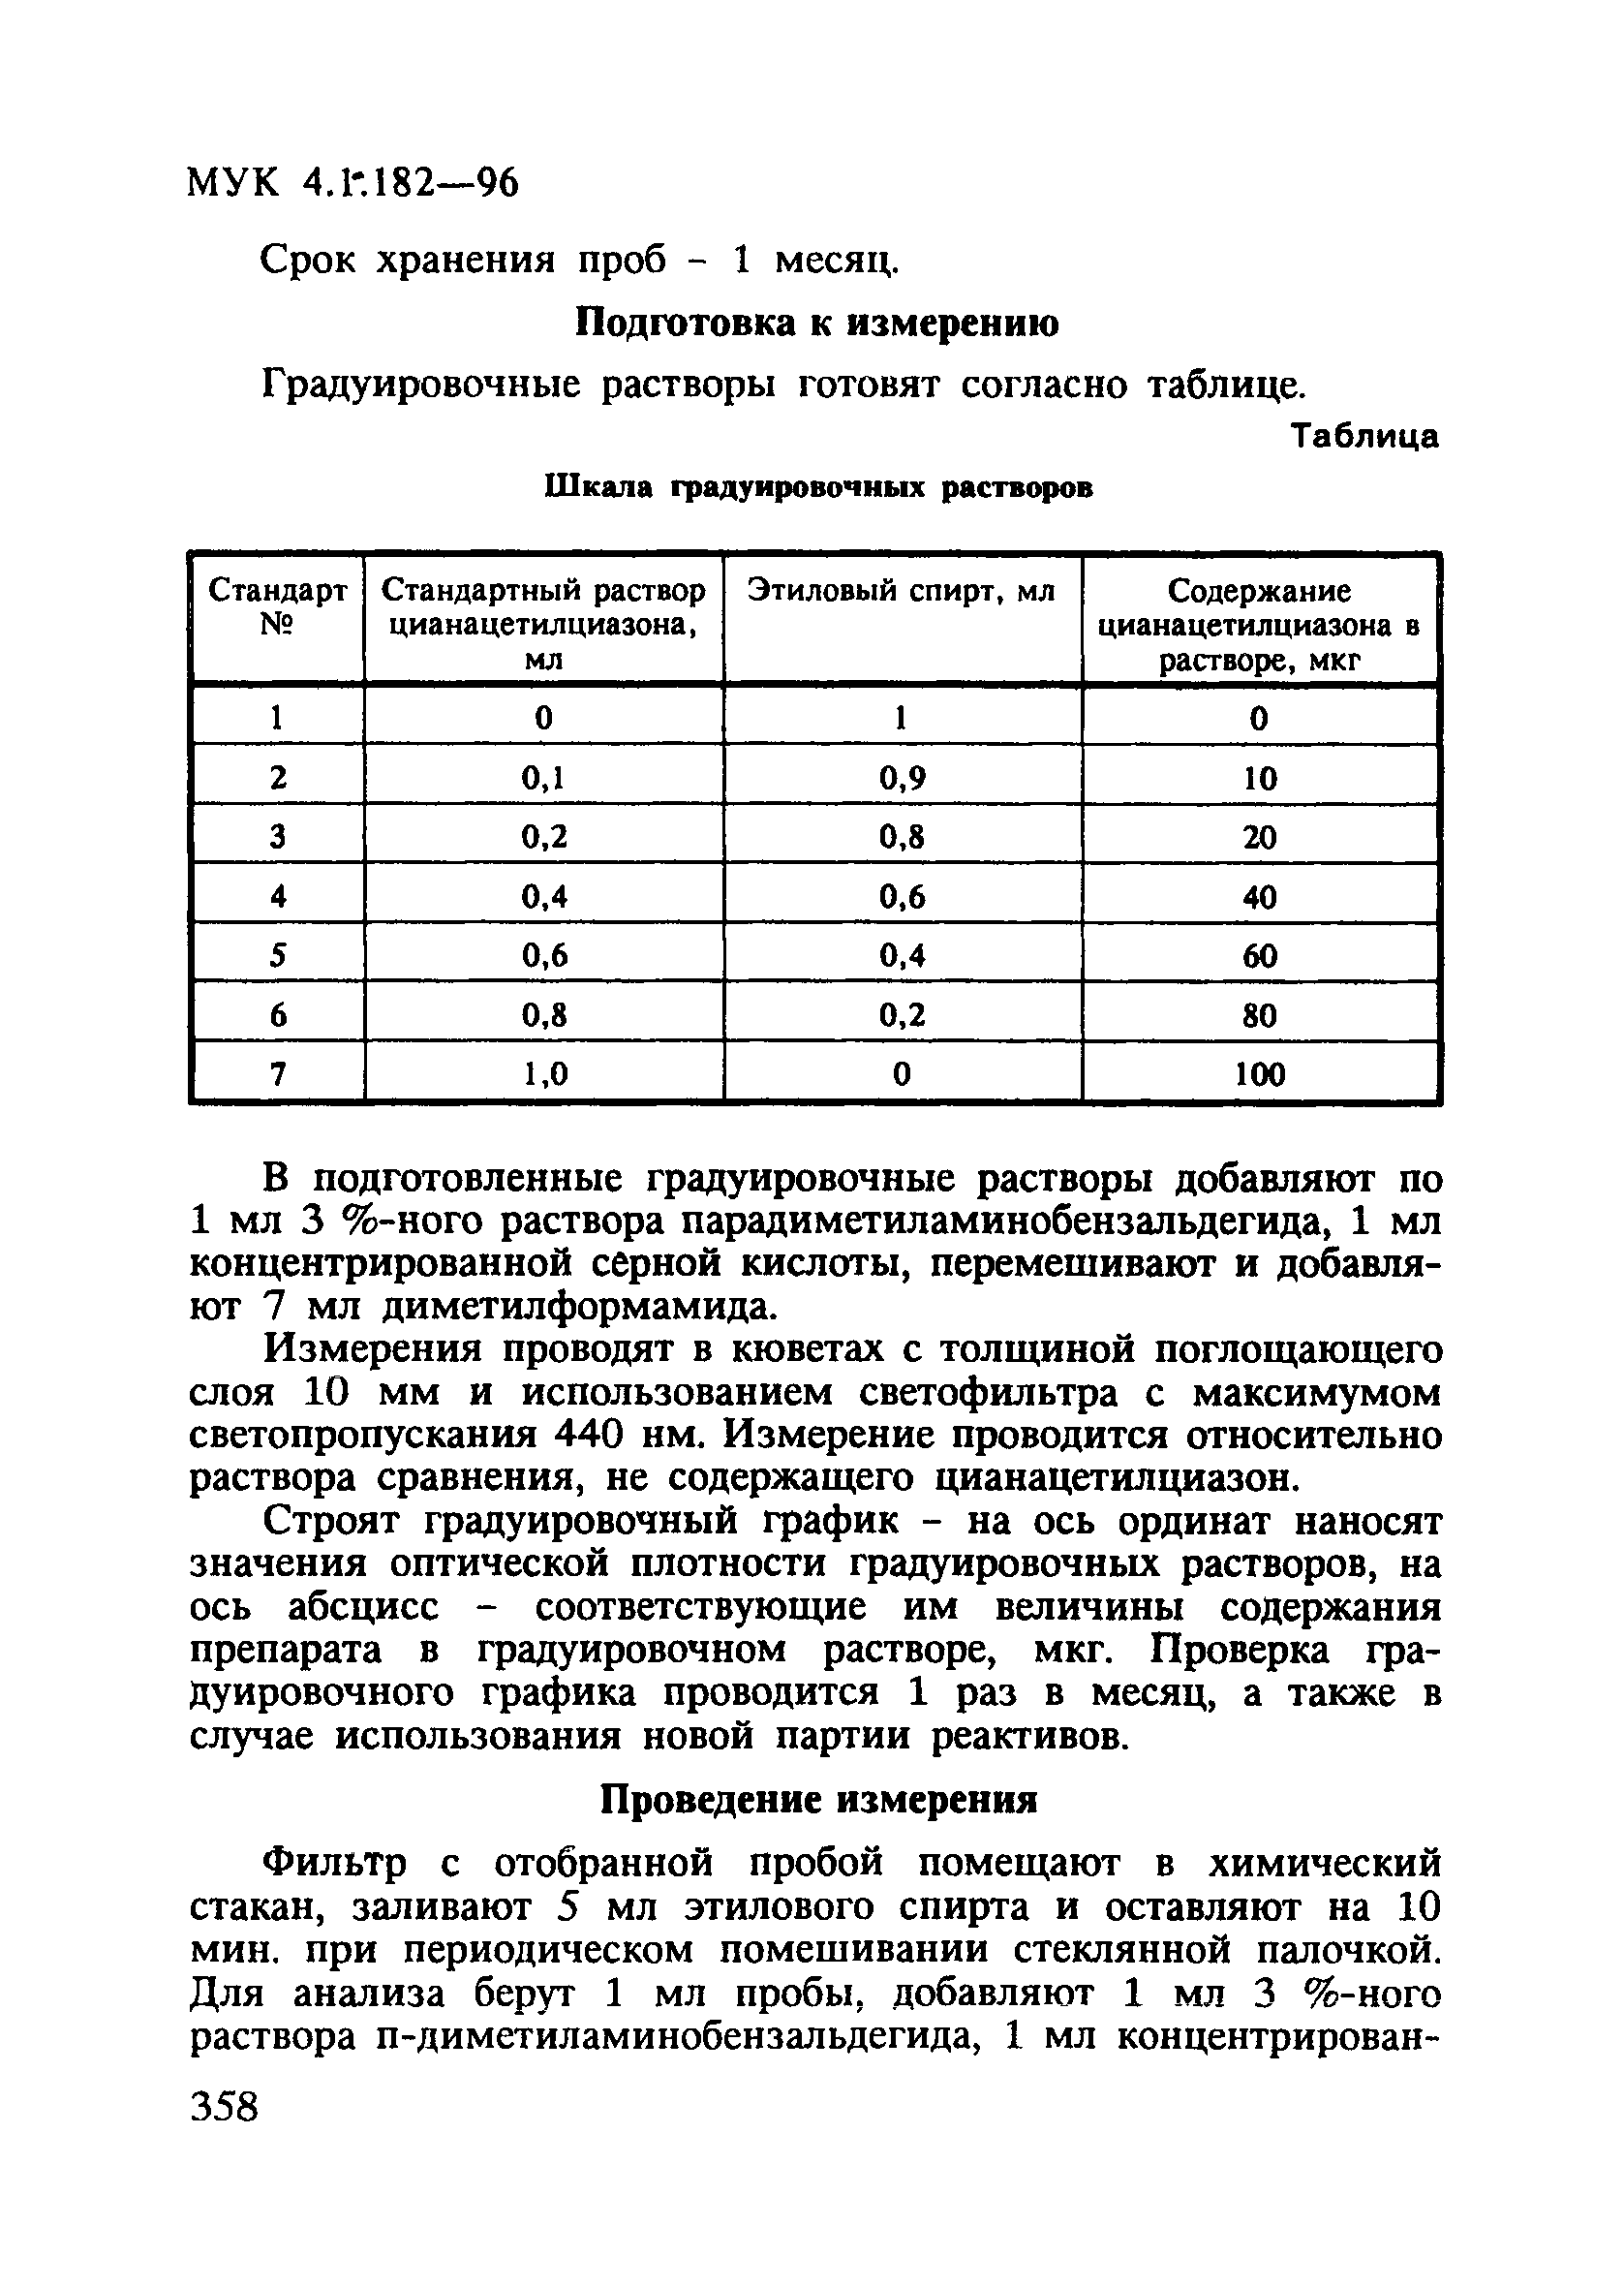 МУК 4.1.182-96